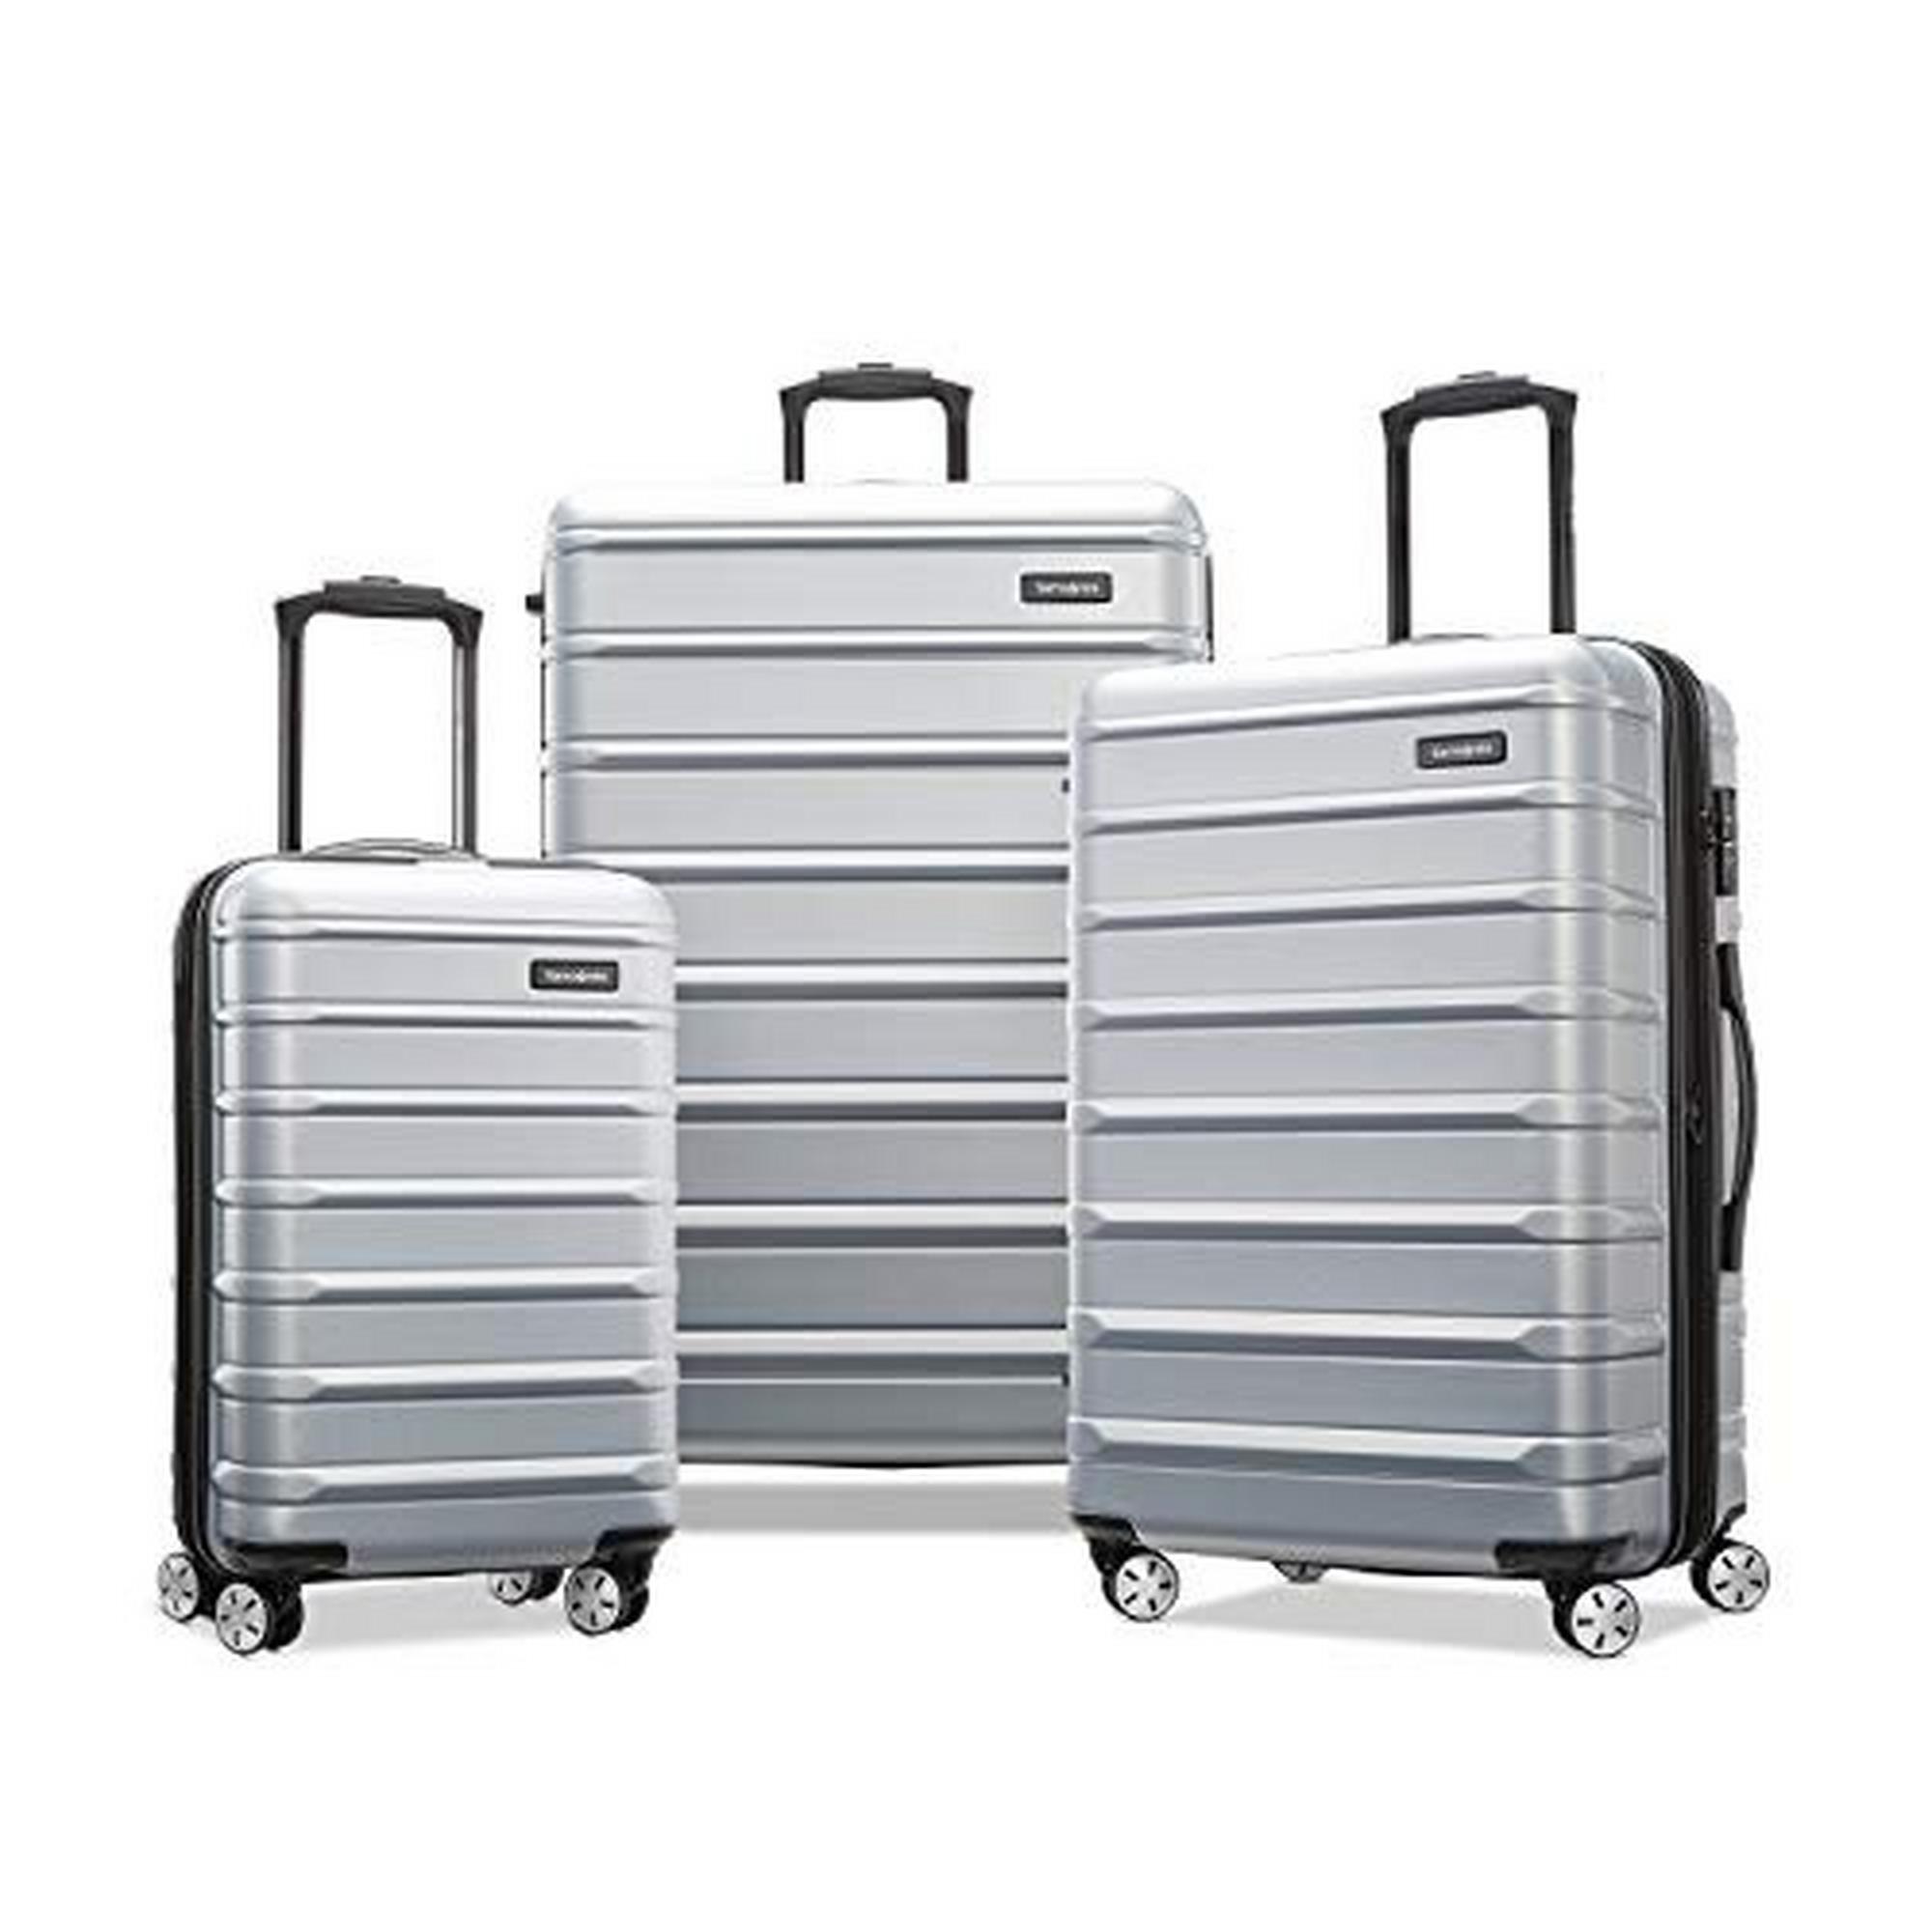 i8 luggage set